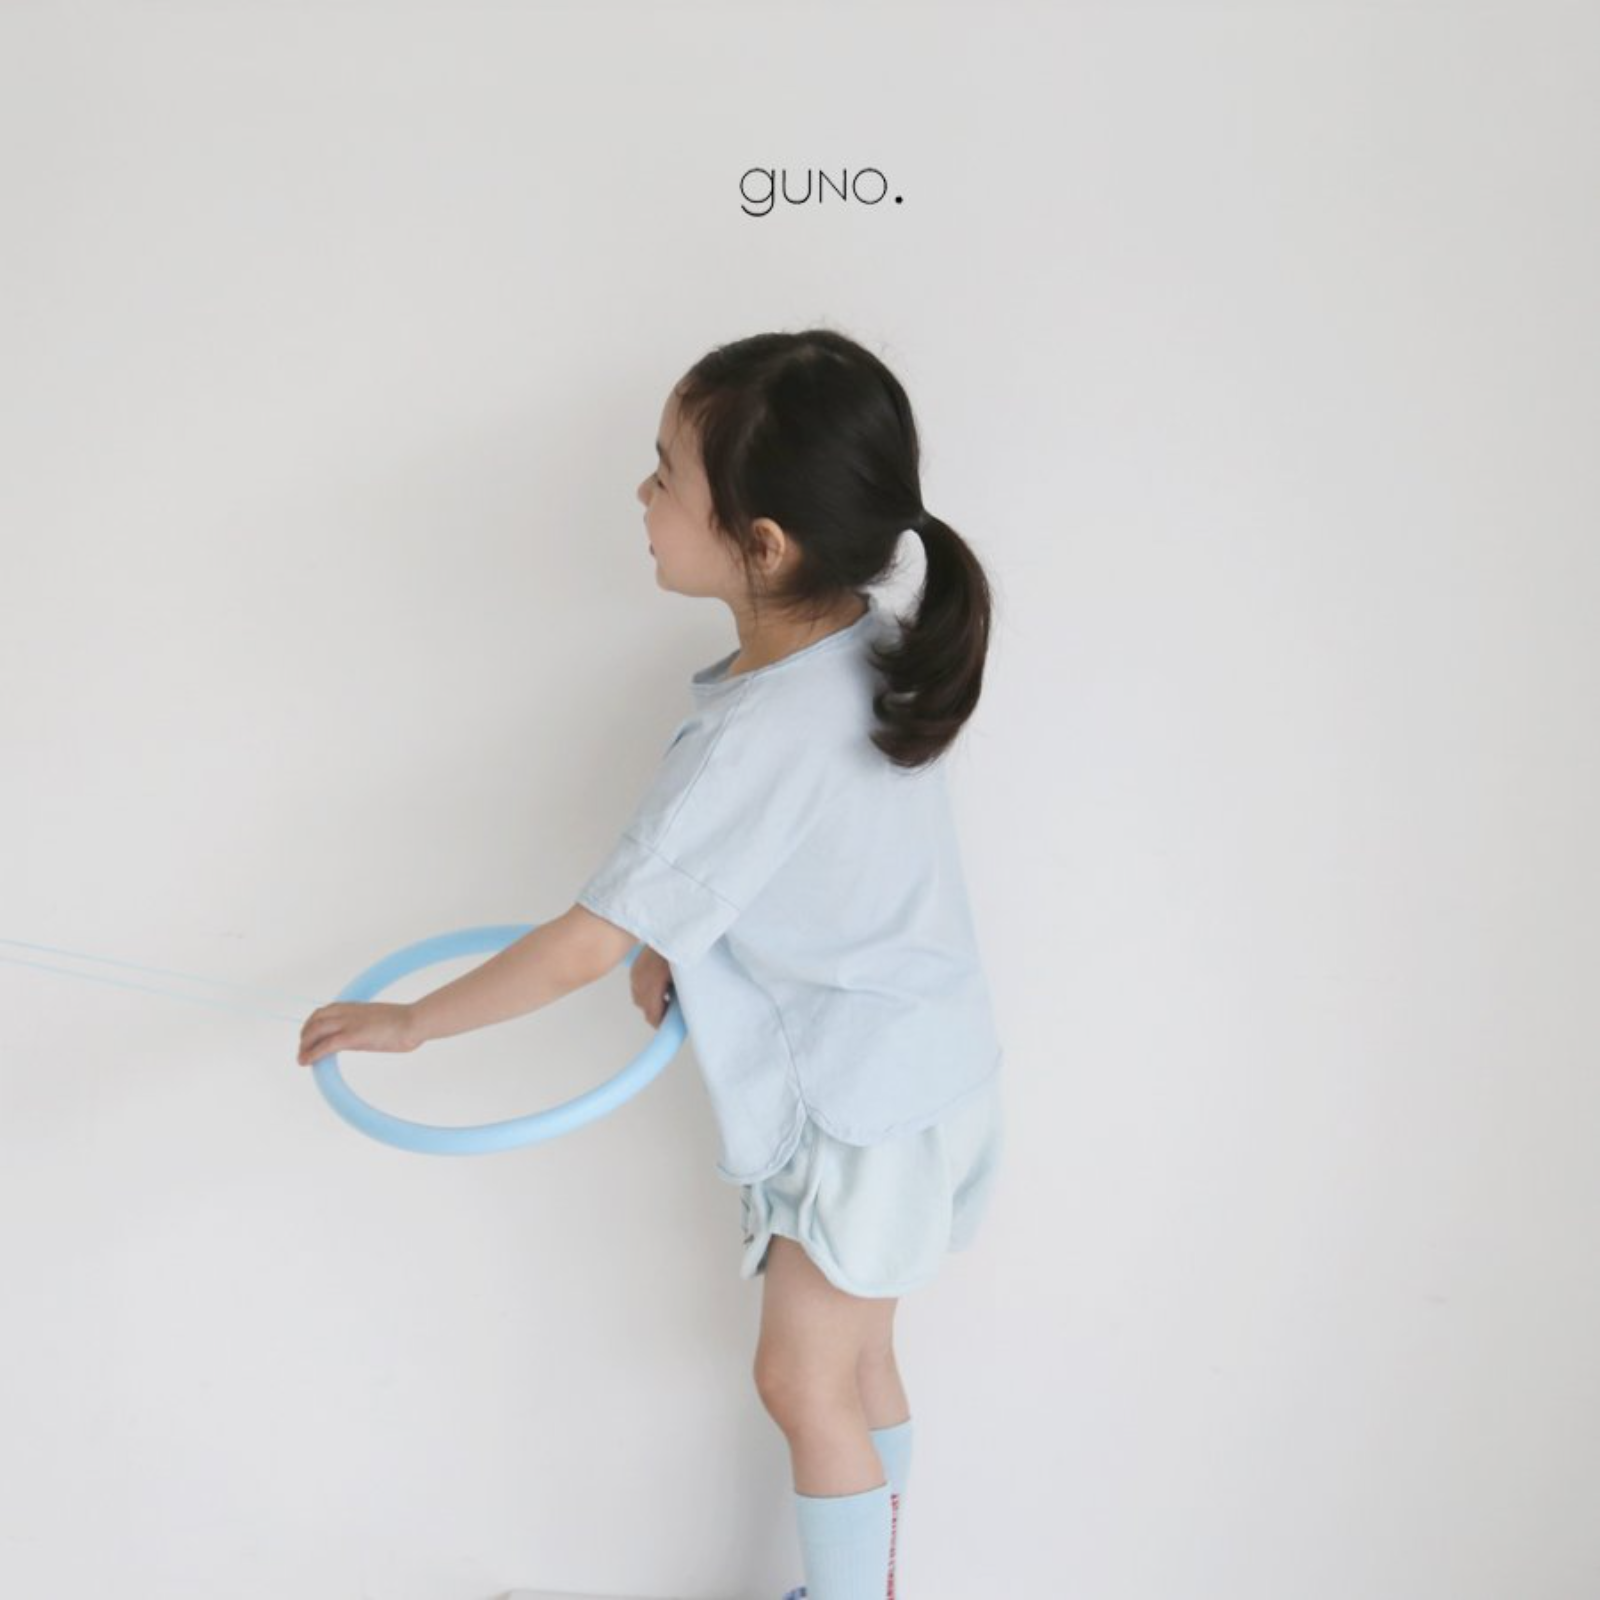 guno. easy shape ショートパンツ(こども服) - kids clothes shop GUZUGUZU